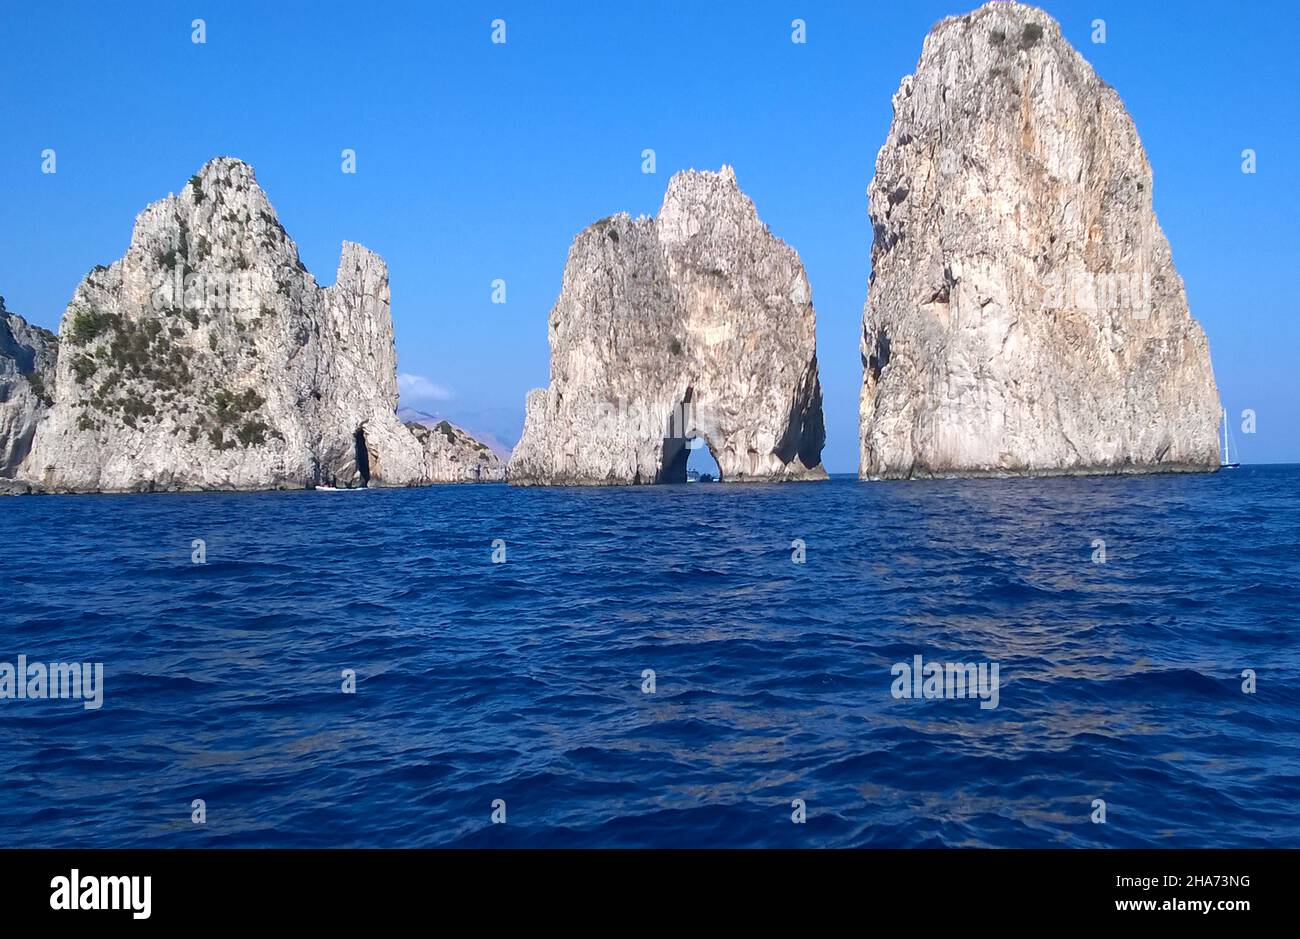 La formation rocheuse connue sous le nom de Faraglioni de Mezzo, juste à côté de l'île de Capri, en Italie, sont considérées comme la vue la plus emblématique de l'île c'est une tradition qui embrasse un partenaire sous la petite arche lorsqu'un bateau passe à travers elle apporte de la chance au couple concerné. Banque D'Images